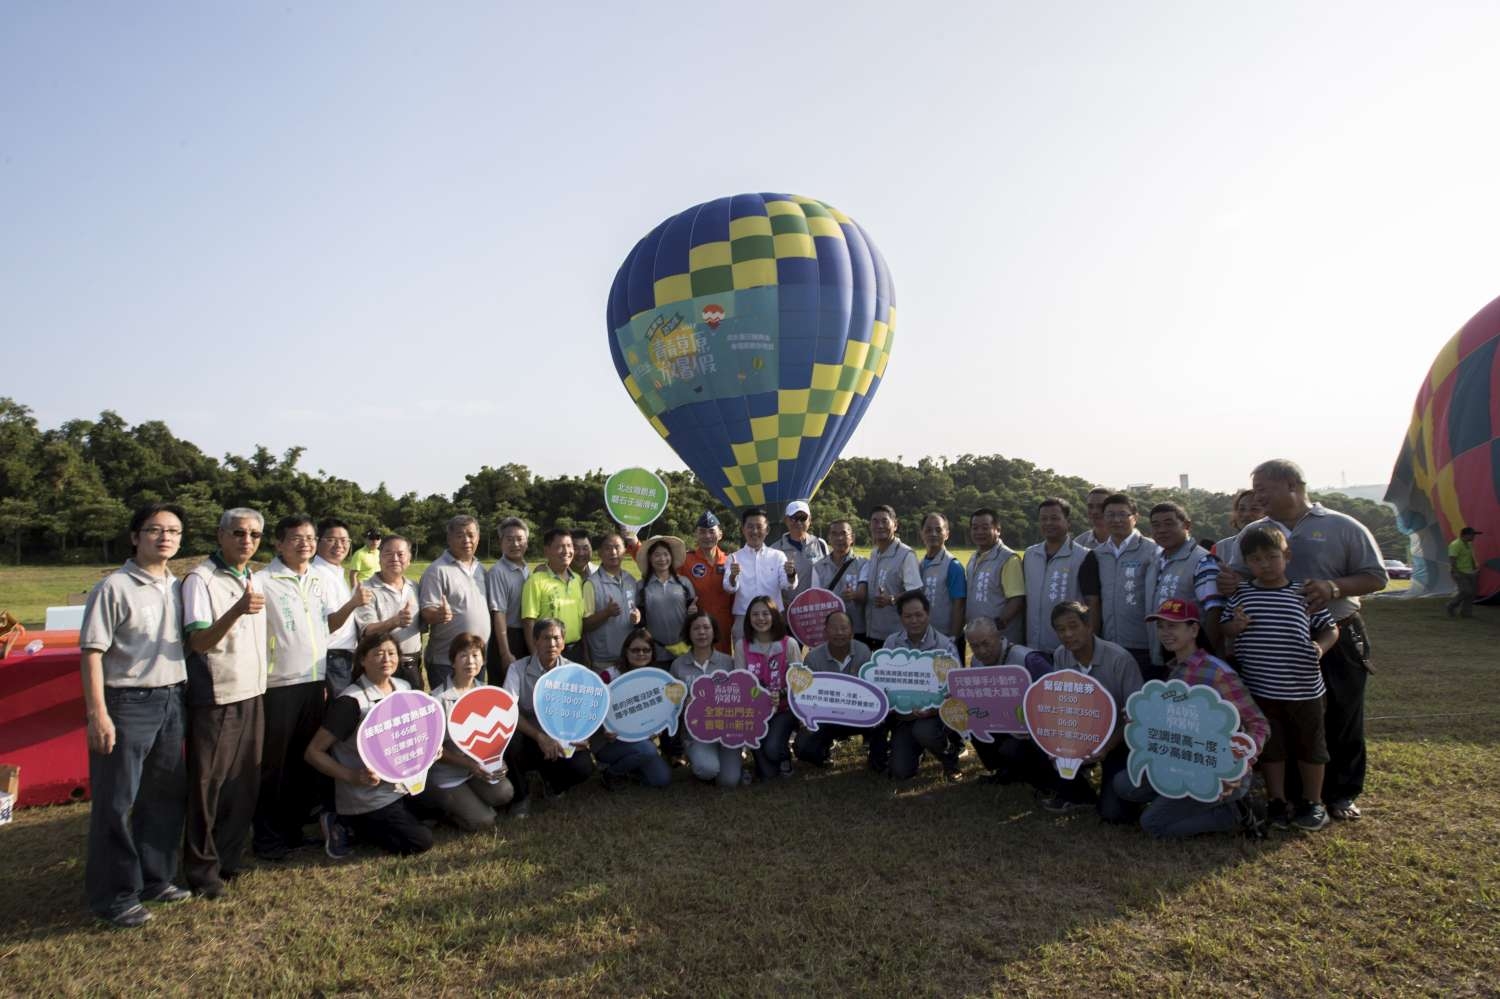 熱氣球繽紛派對週末登場 林智堅市長邀全台民眾玩遍青青草原